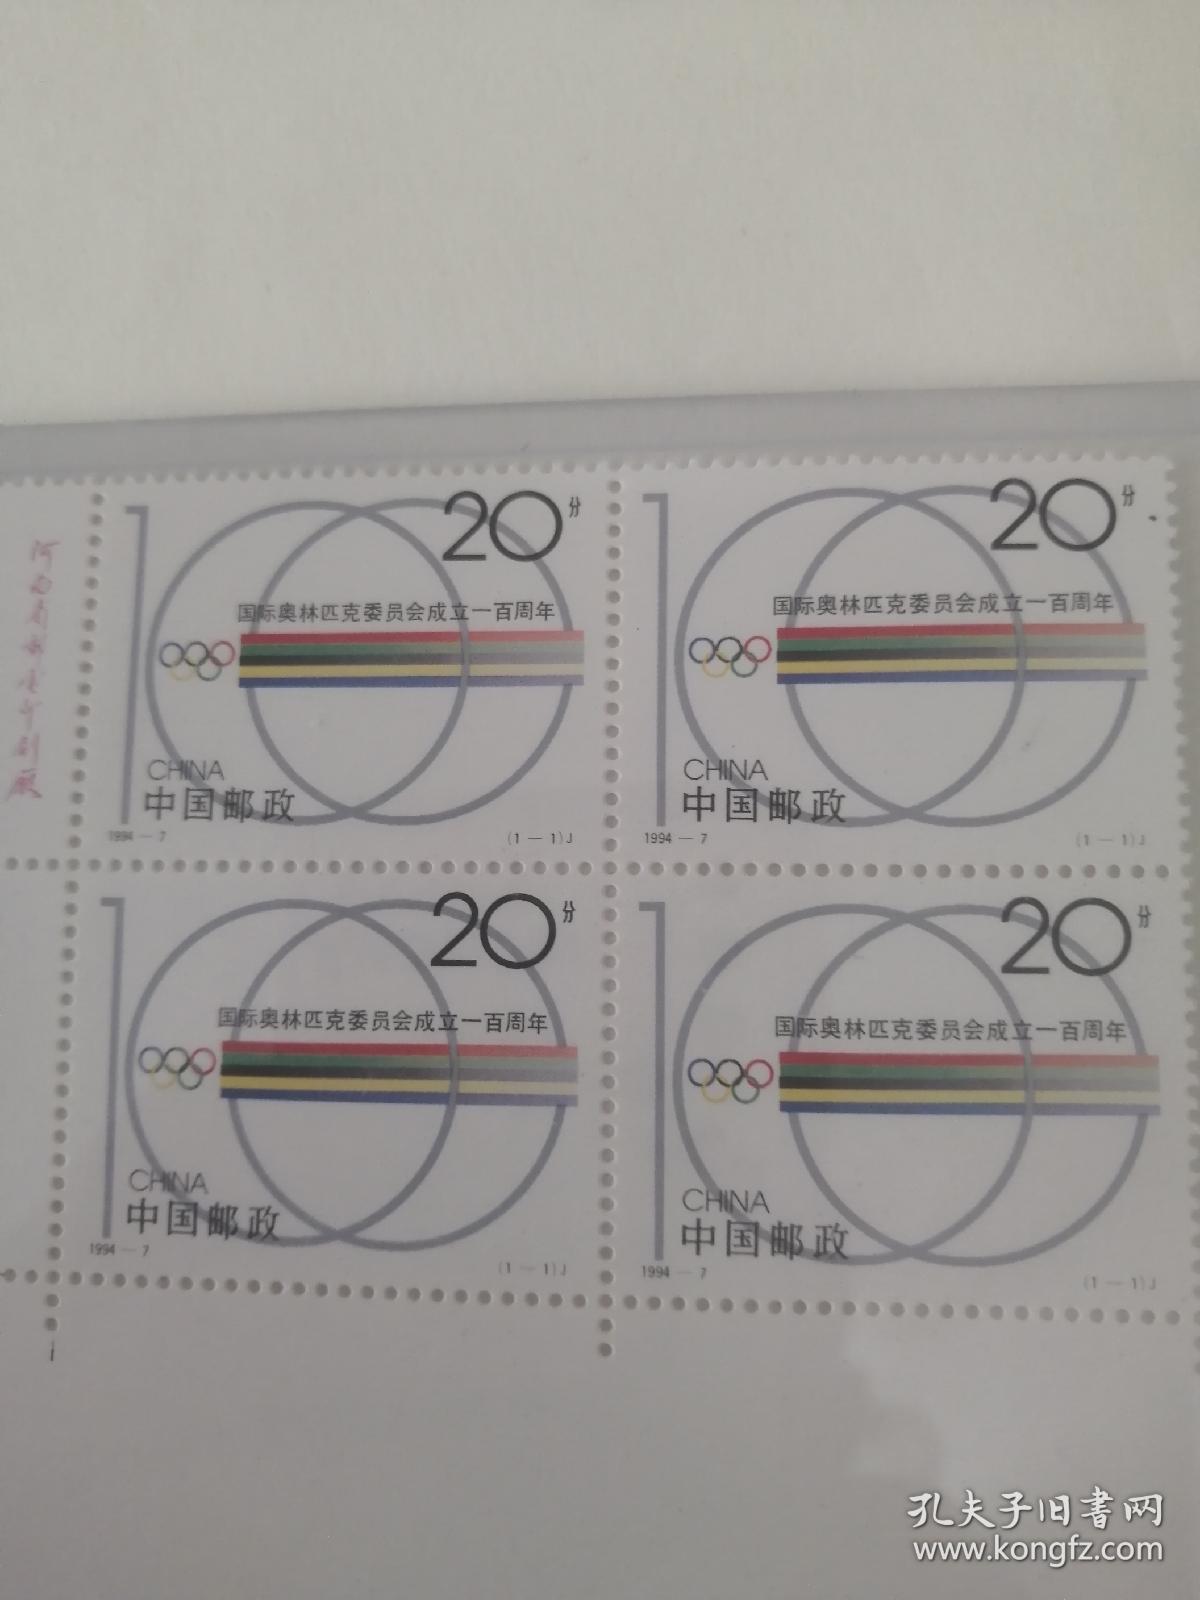 国际奥林匹克委员会成立100周年邮票  四方联   1994年发行  保真   编年邮票